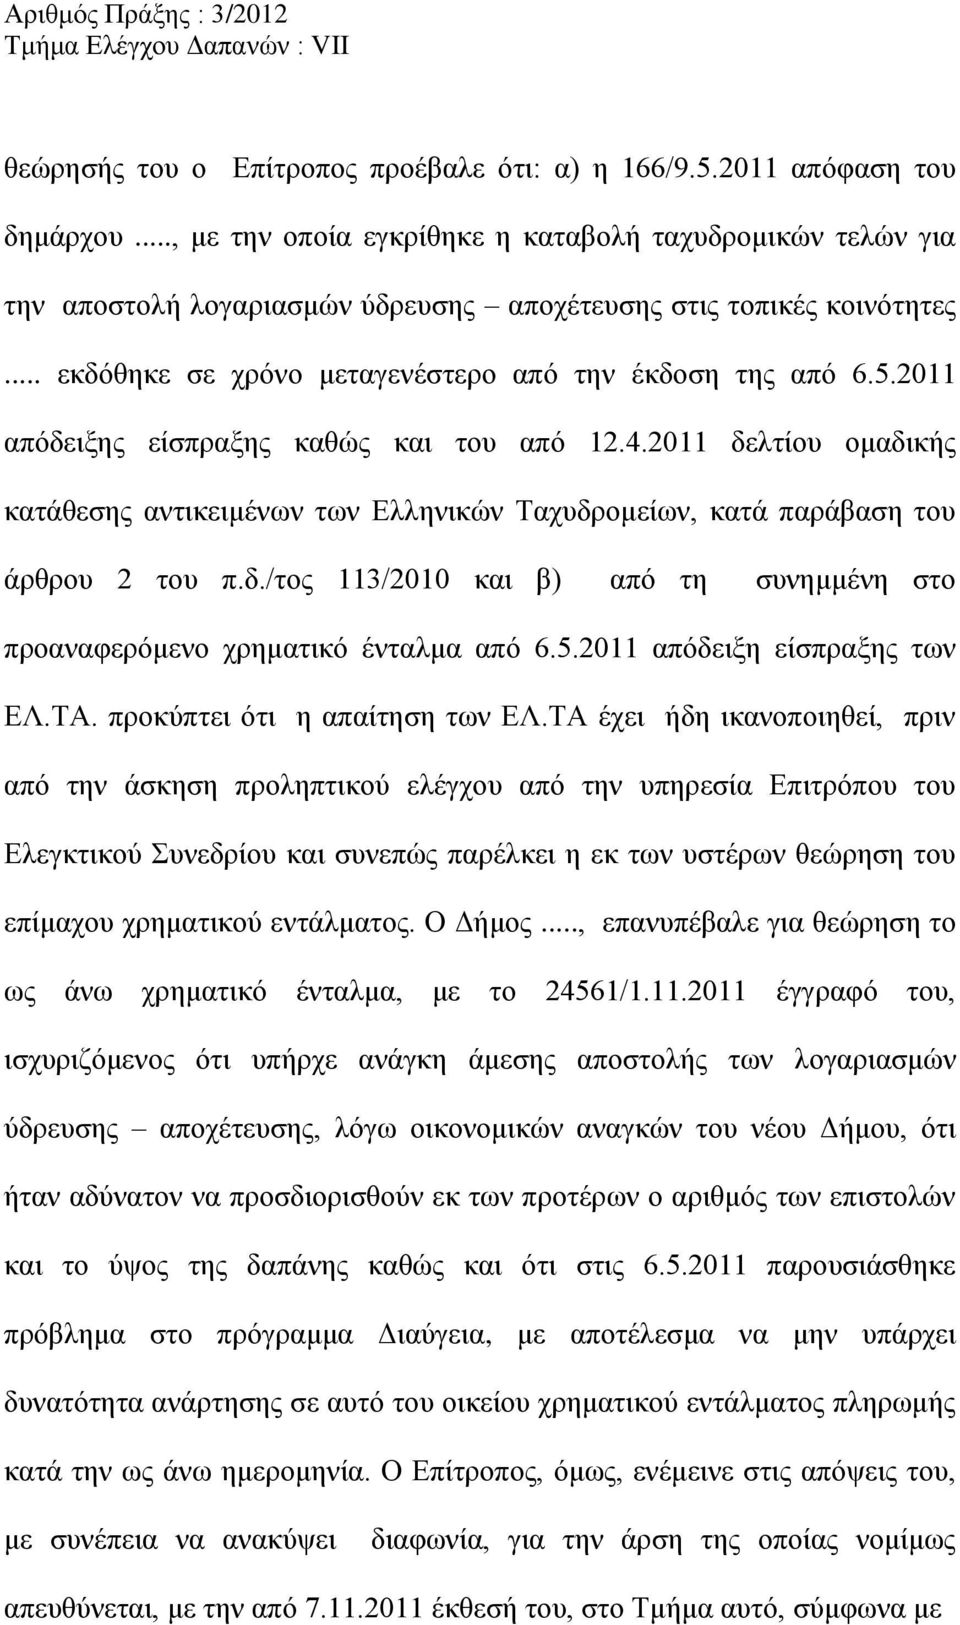 2011 απόδειξης είσπραξης καθώς και του από 12.4.2011 δελτίου ομαδικής κατάθεσης αντικειμένων των Ελληνικών Ταχυδρομείων, κατά παράβαση του άρθρου 2 του π.δ./τος 113/2010 και β) από τη συνημμένη στο προαναφερόμενο χρηματικό ένταλμα από 6.